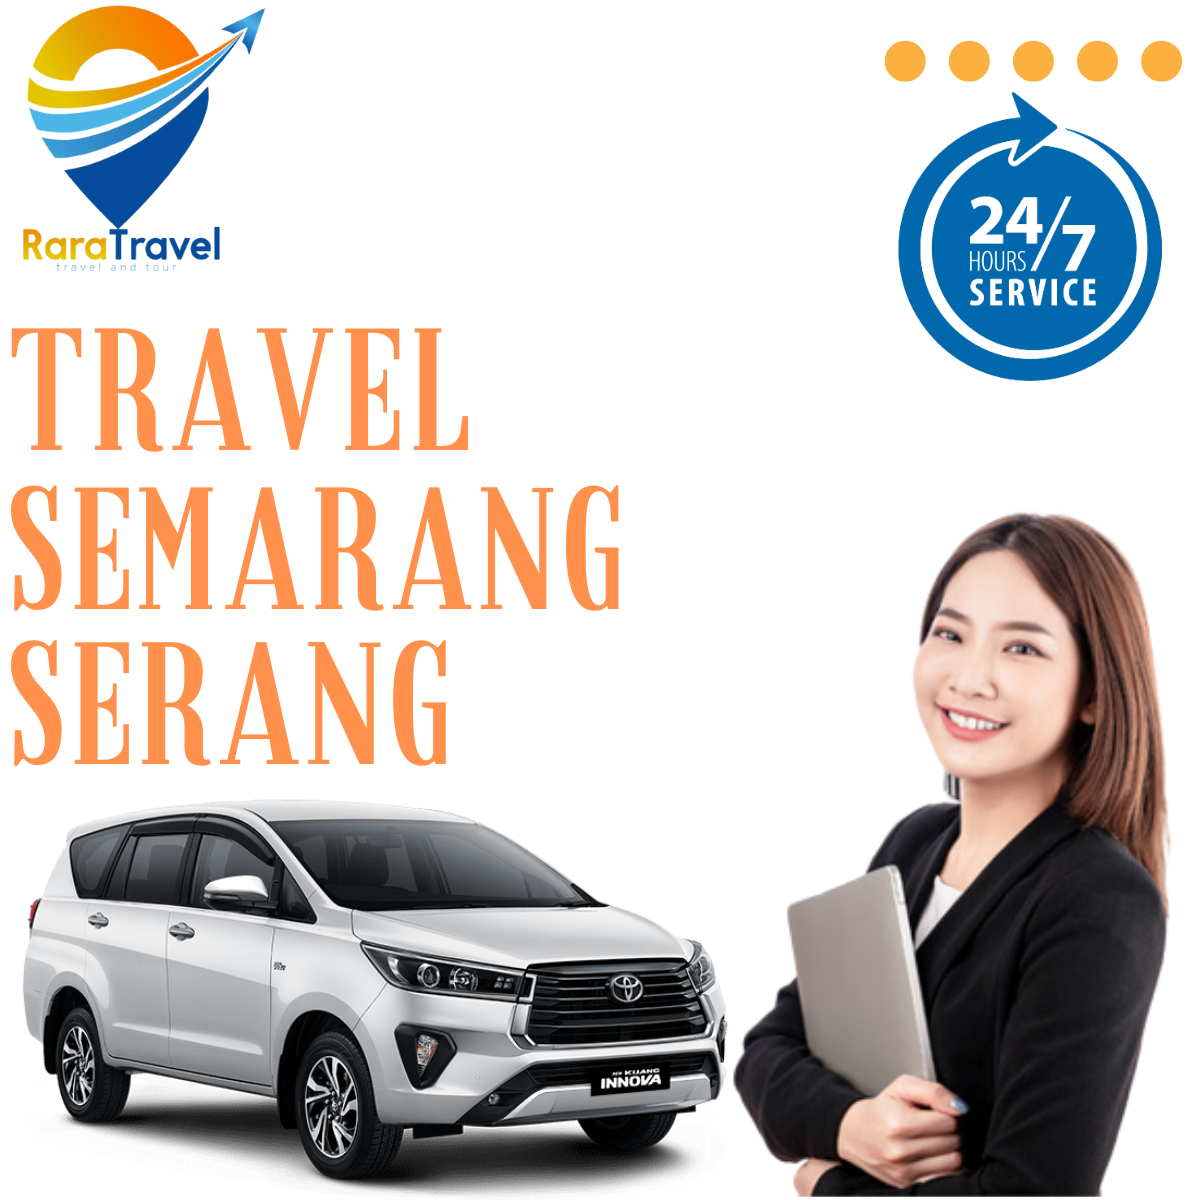 Travel Semarang Serang: Harga Ticket, Jadwal, Fasilitas dan Rute